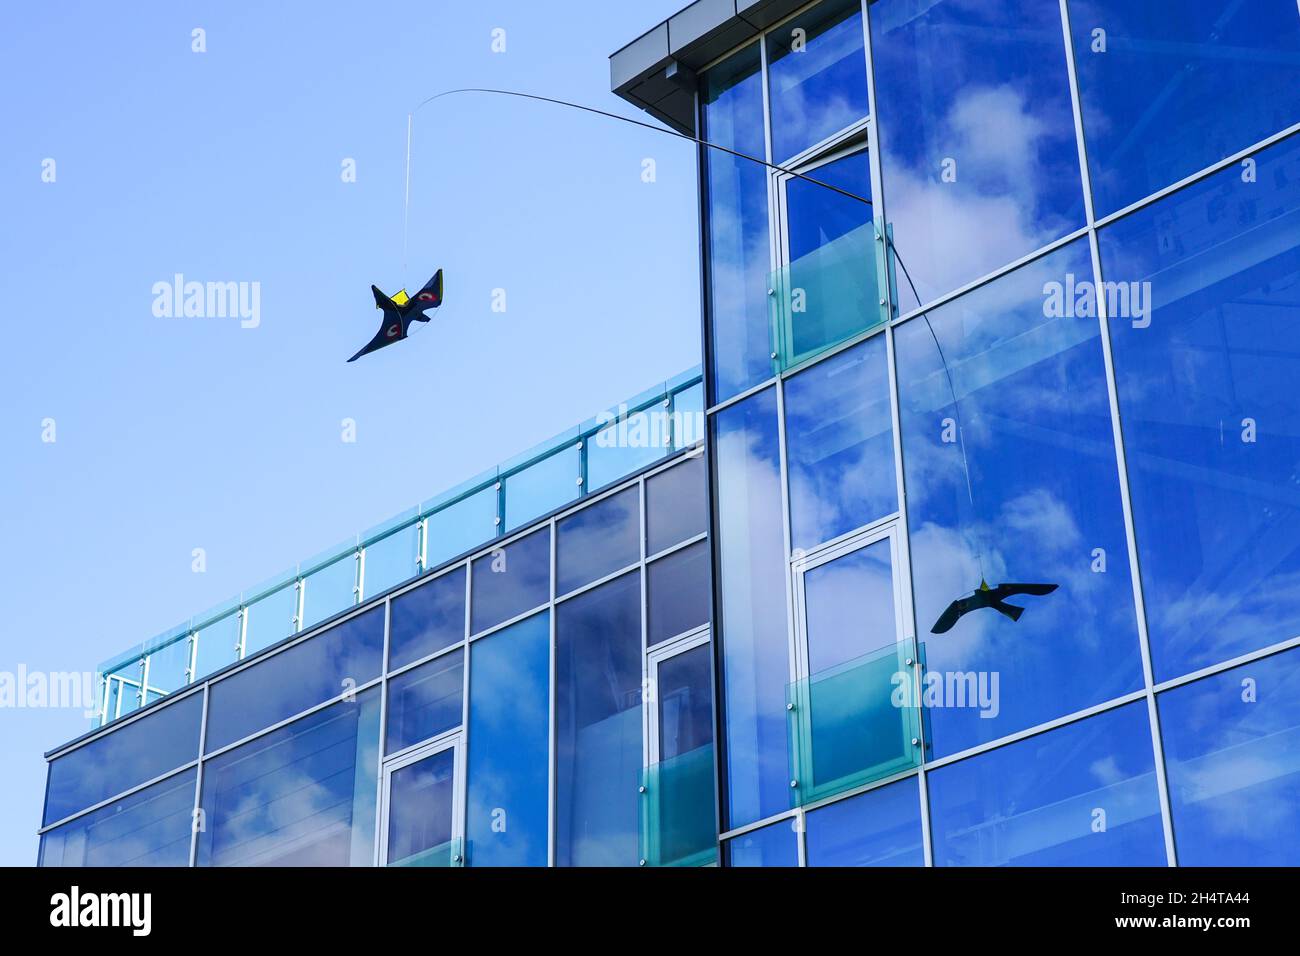 Der Vogel abweisende Drache ahmt die Silhouette eines Falken oder Falken nach und schützt Vögel vor dem Auftreffen auf die Glasfassade Stockfoto